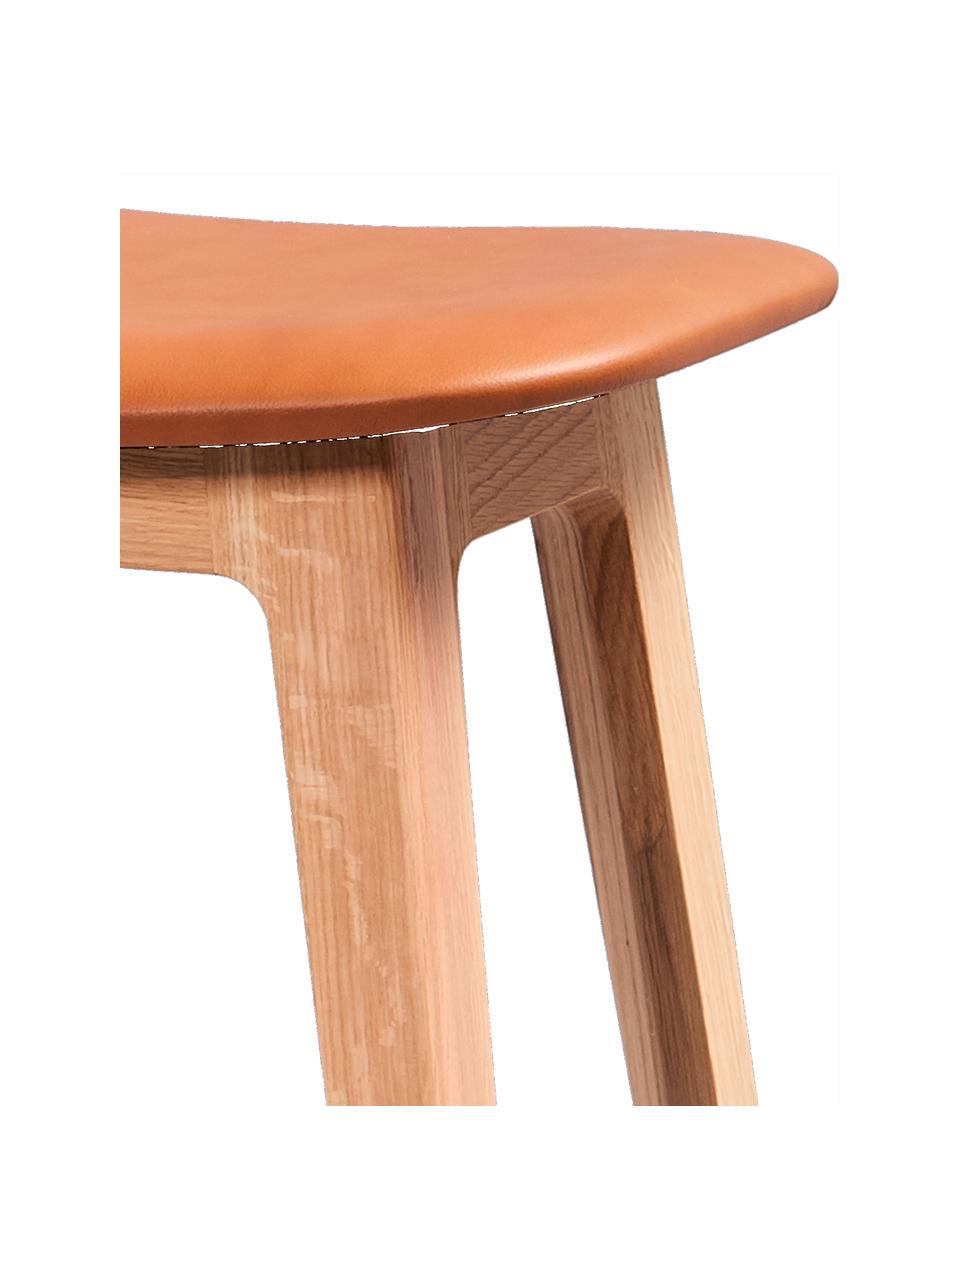 Barová židle z dubového dřeva Ultra, Světle hnědá kůže, dubové dřevo, Š 35 cm, V 73 cm